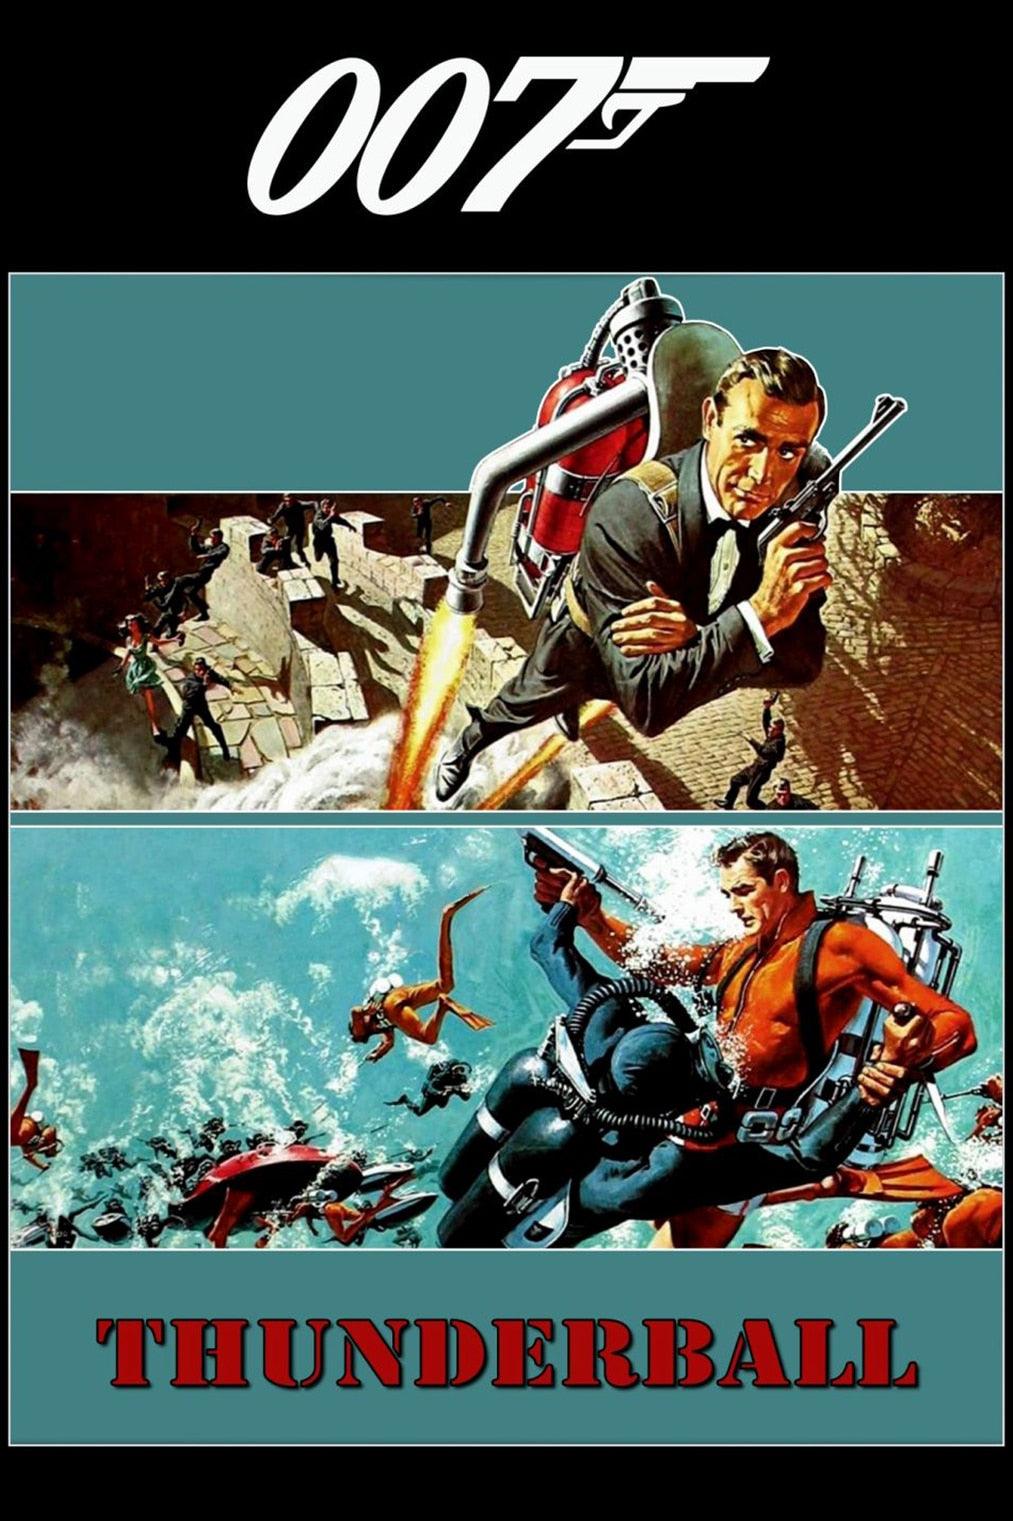 Thunderball Jet Pack Underwater James Bond Poster - Aesthetic Wall Decor